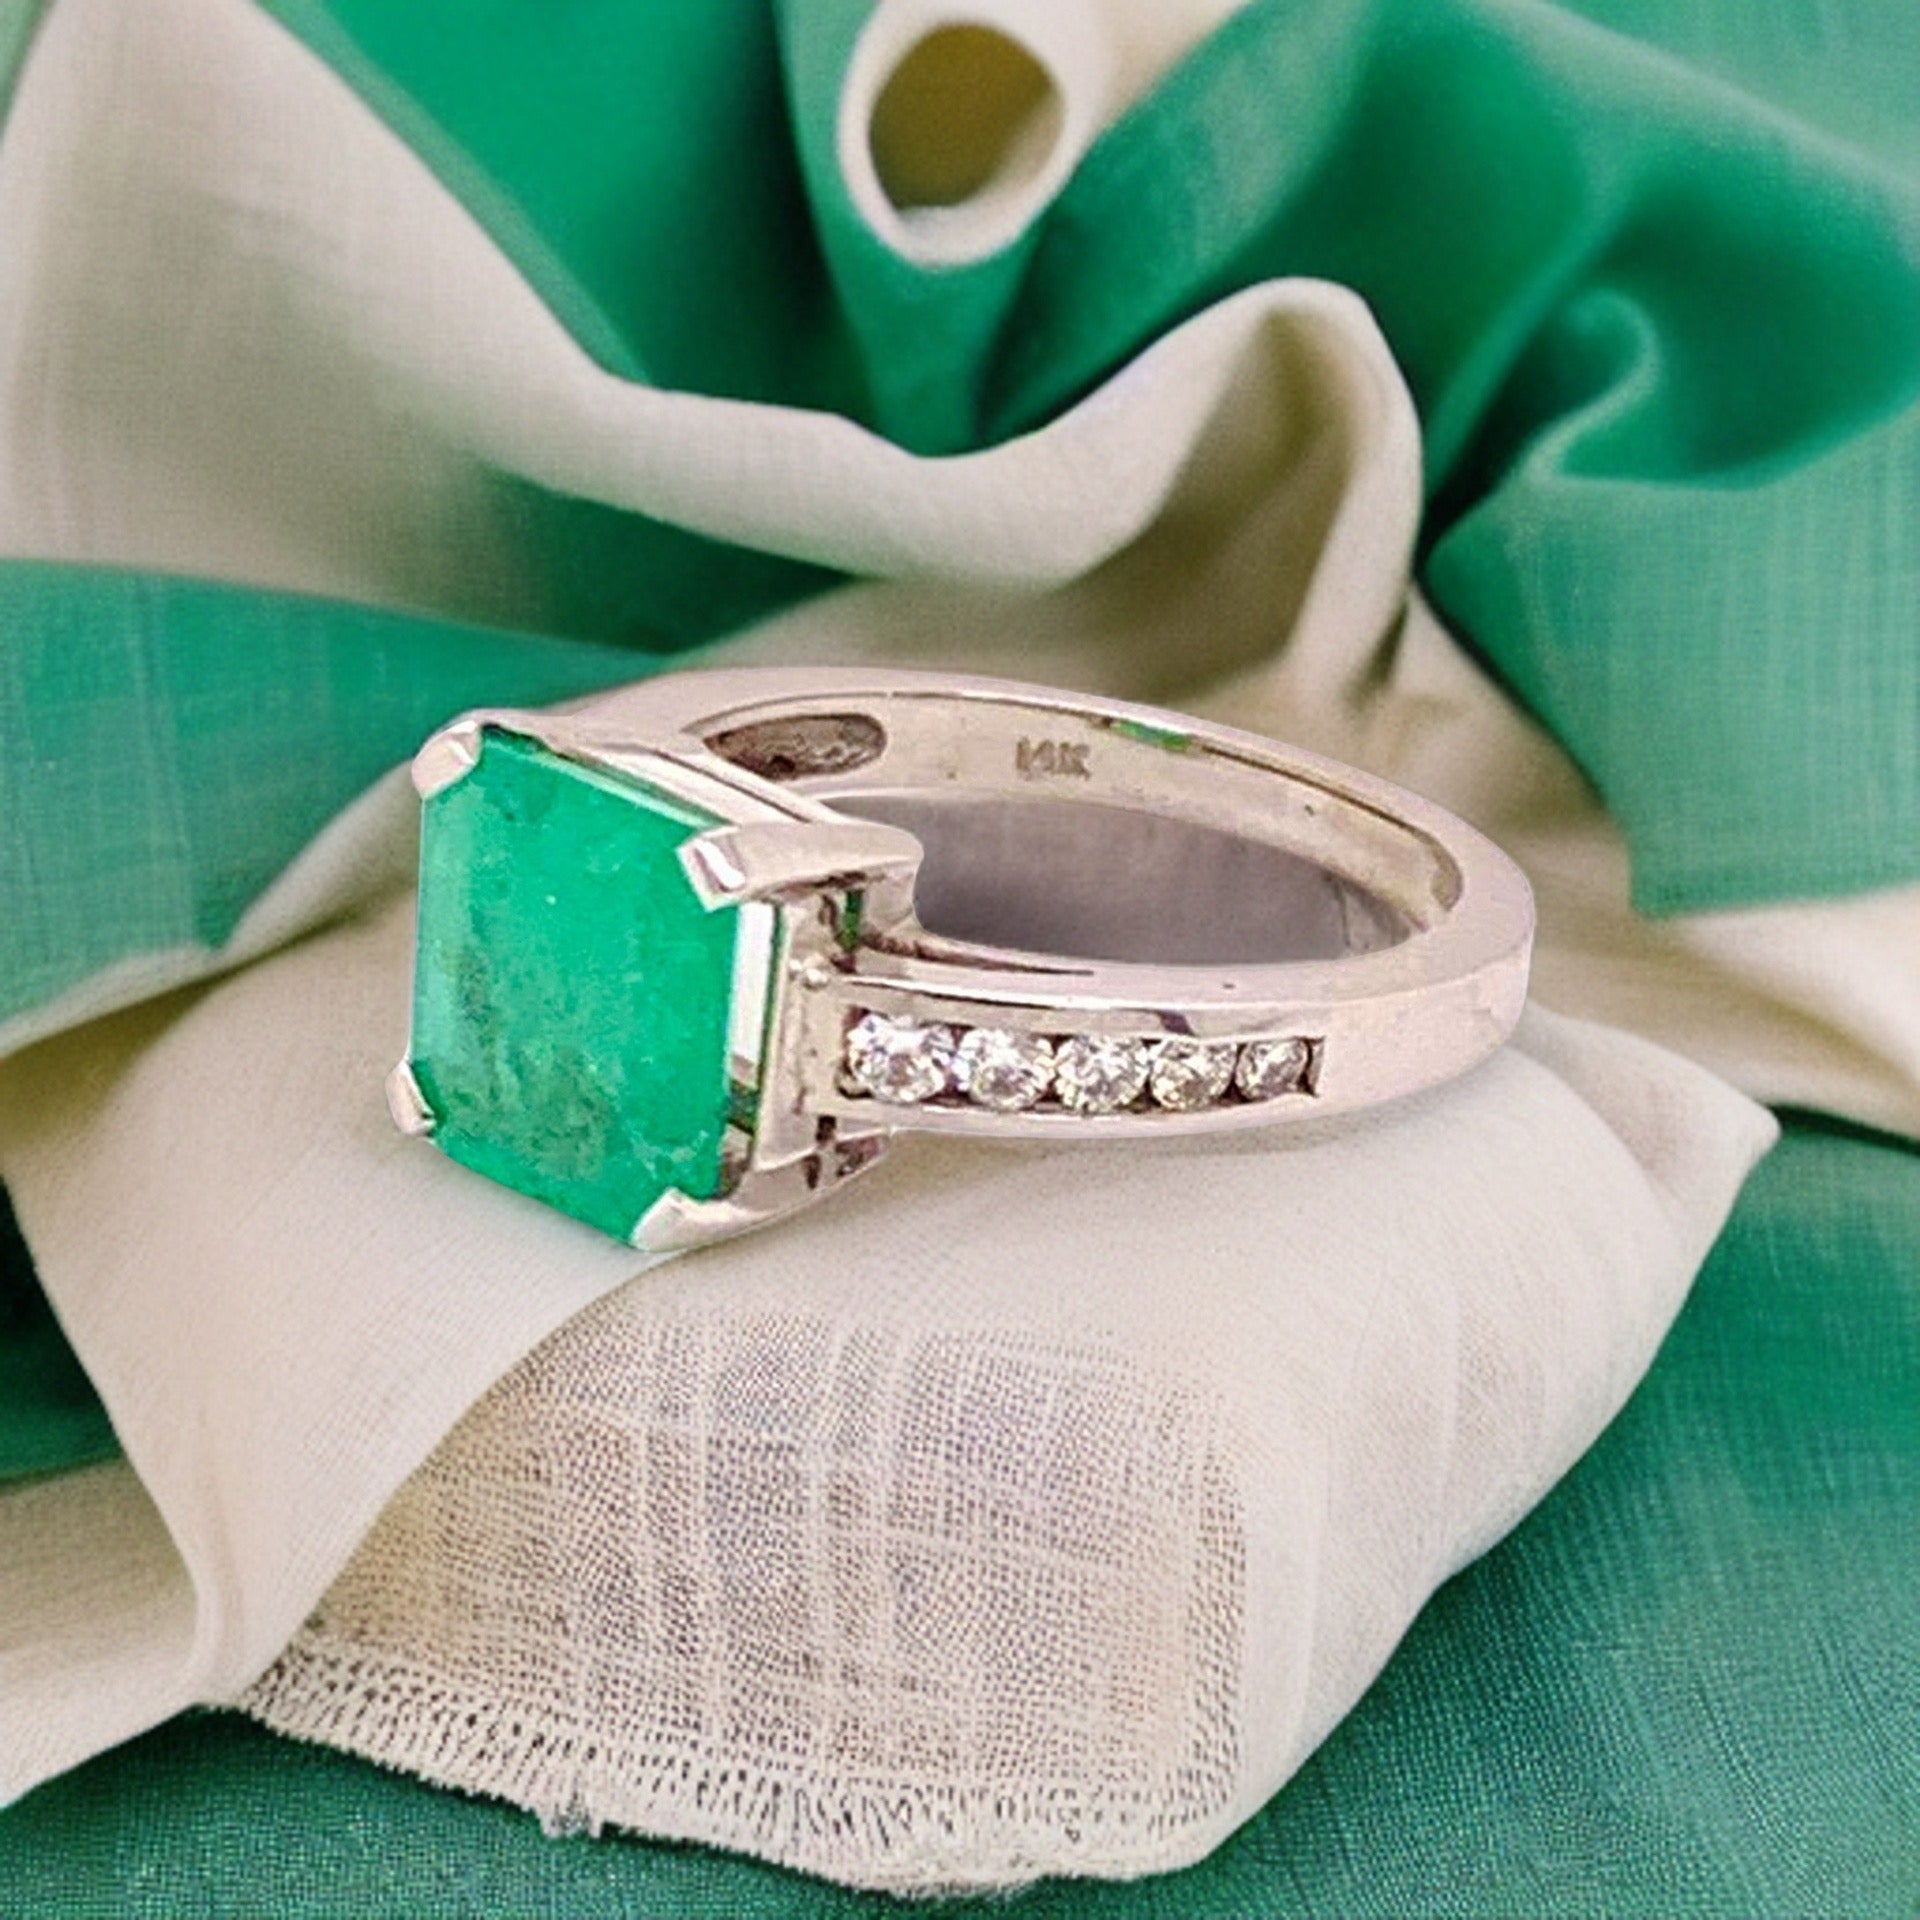 Diamond Emerald Ring 14k Gold 2.55 TCW Women Certified $3,800 912292 - Certified Fine Jewelry